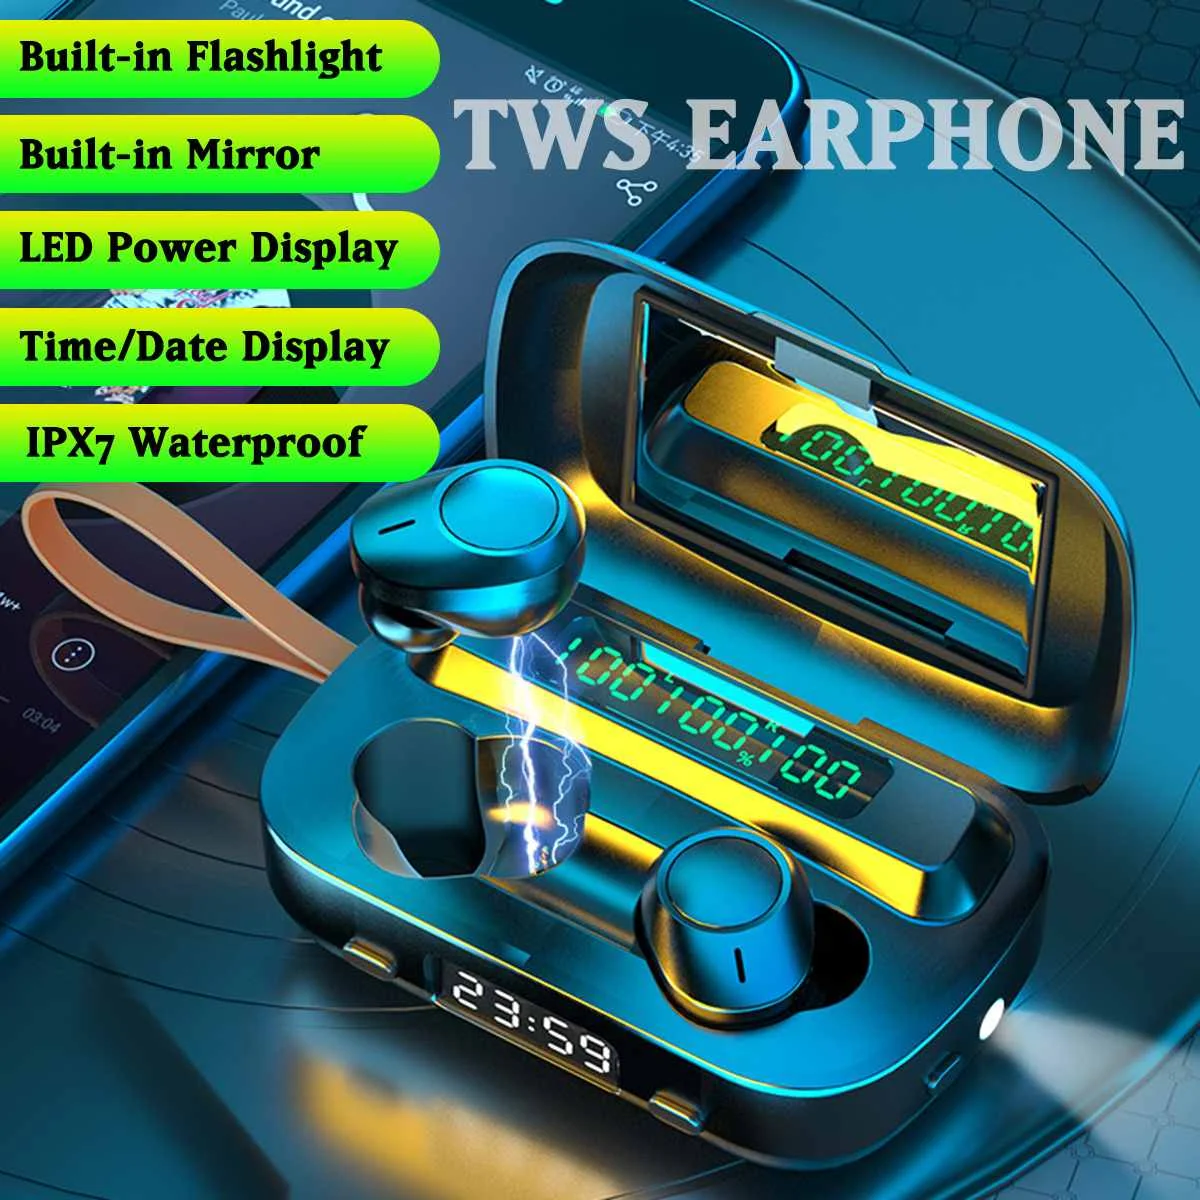 

4000mah TWS Bluetooth Earphone V5.0 9D Stereo Wireless Headset Sport Waterproof Earphones Mini True Wireless Earbuds with light